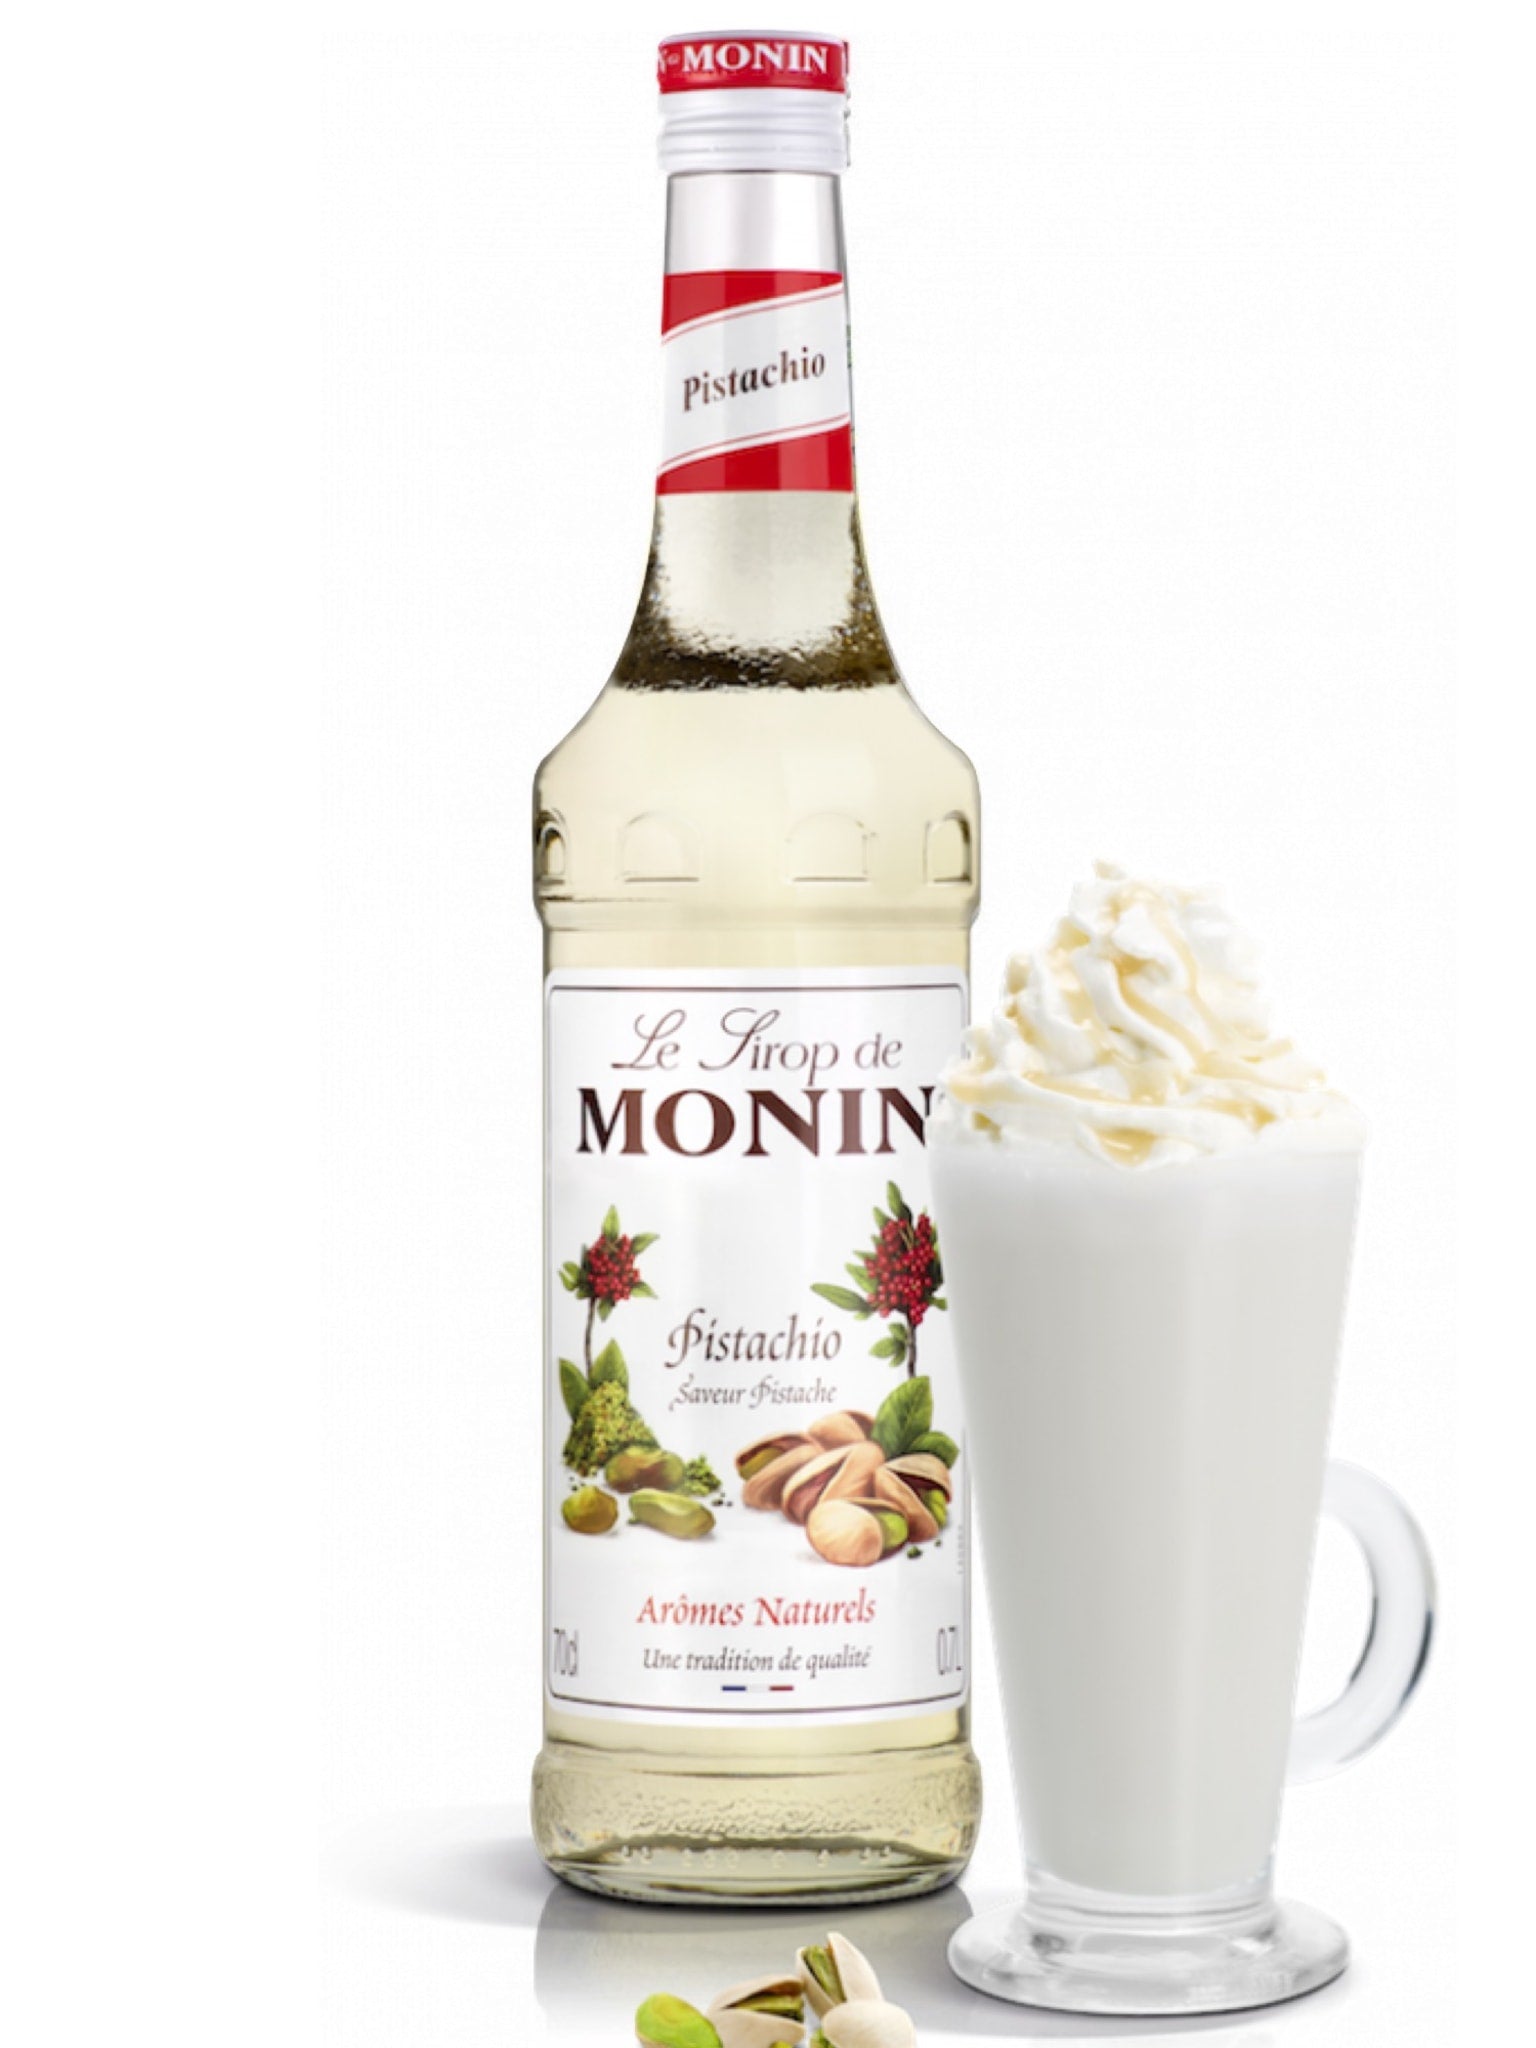 Tilføj en skøn og nøddeagtig nuance til dine cocktails med Monin Pistacie Sirup